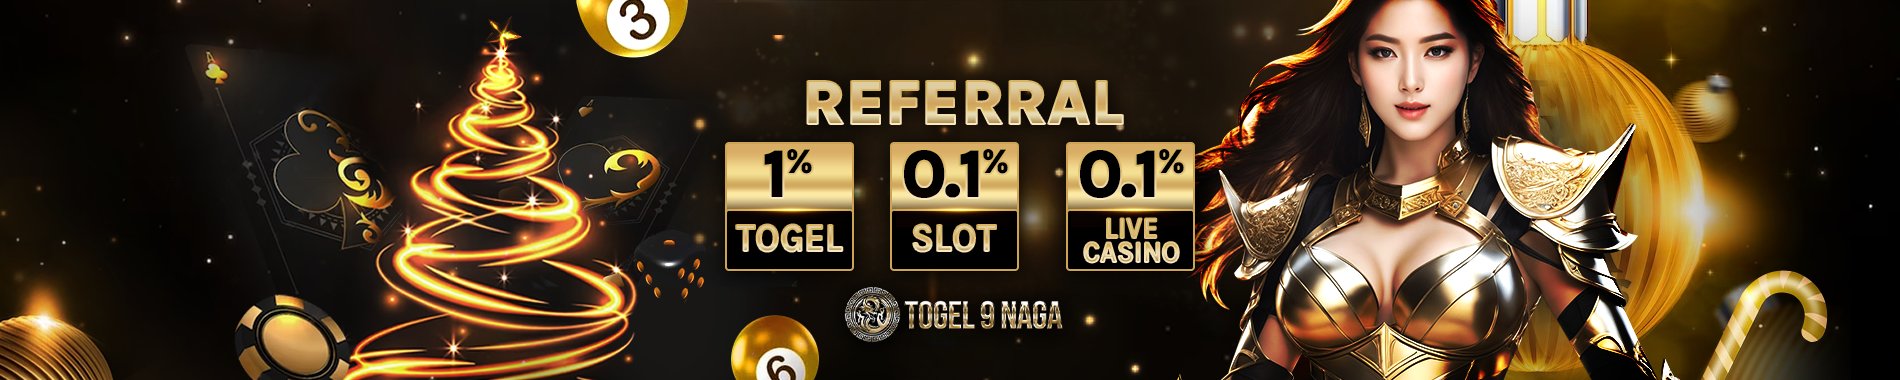 Referral Bonus Togel9naga